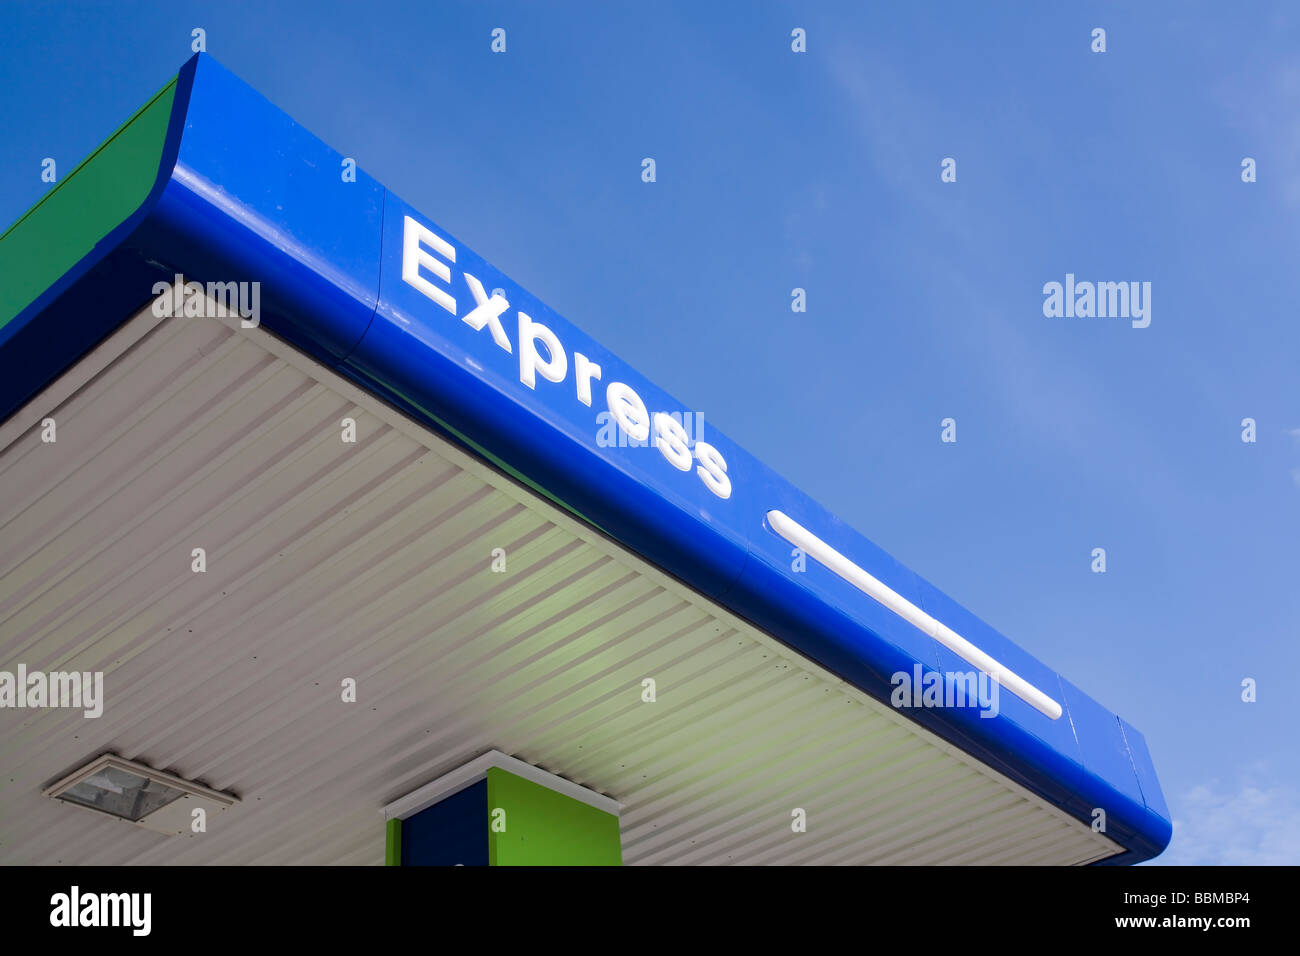 Express station toit contre ciel bleu Banque D'Images